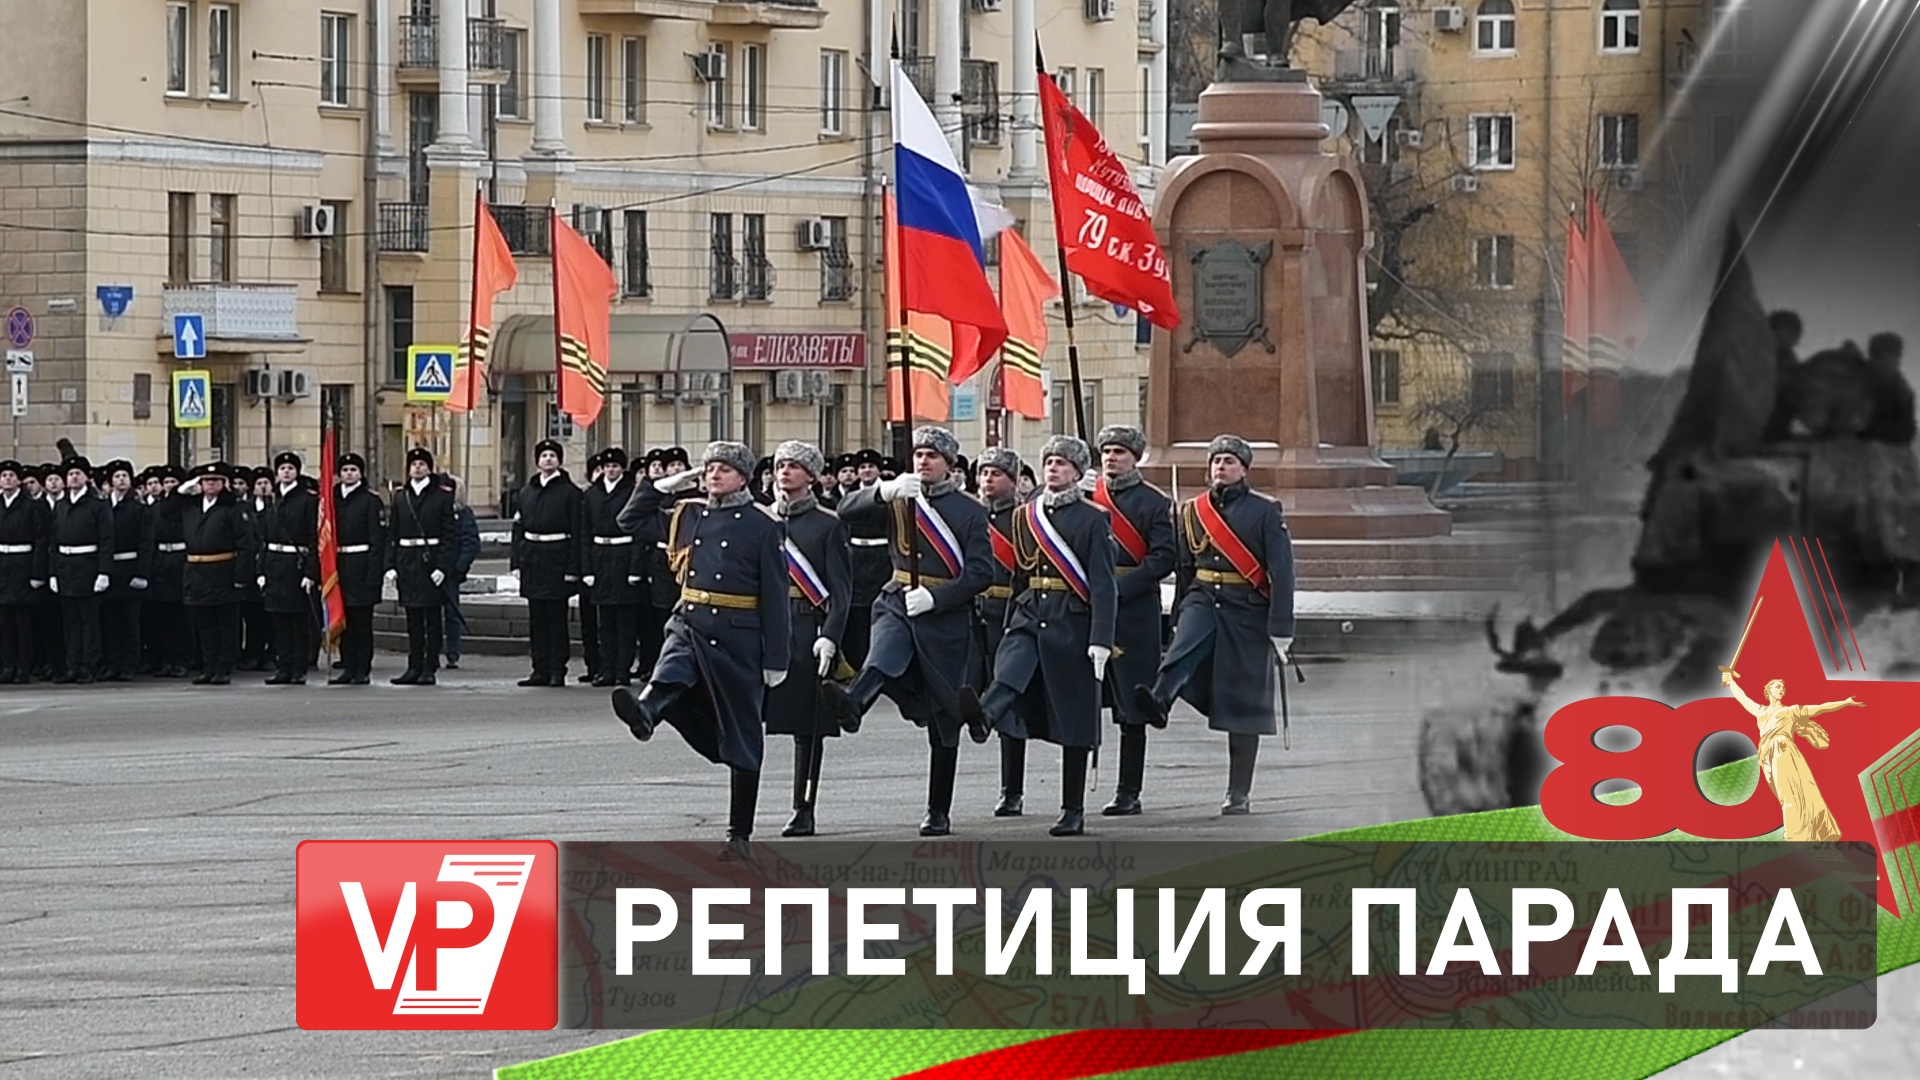 площадь павших борцов сталинград